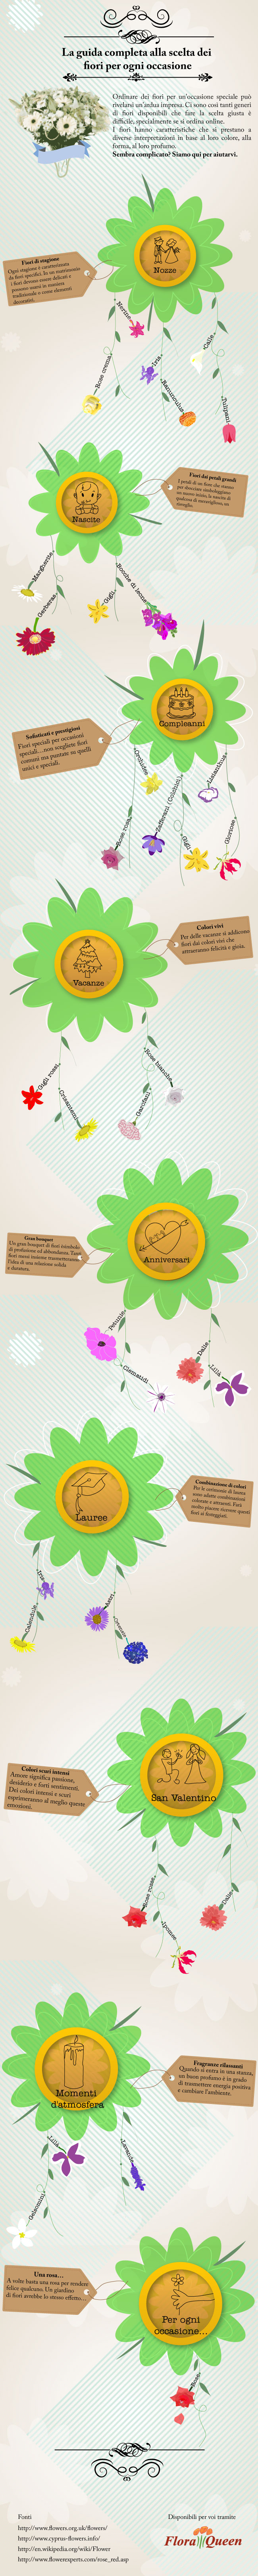 Floraqueen-infographic_IT